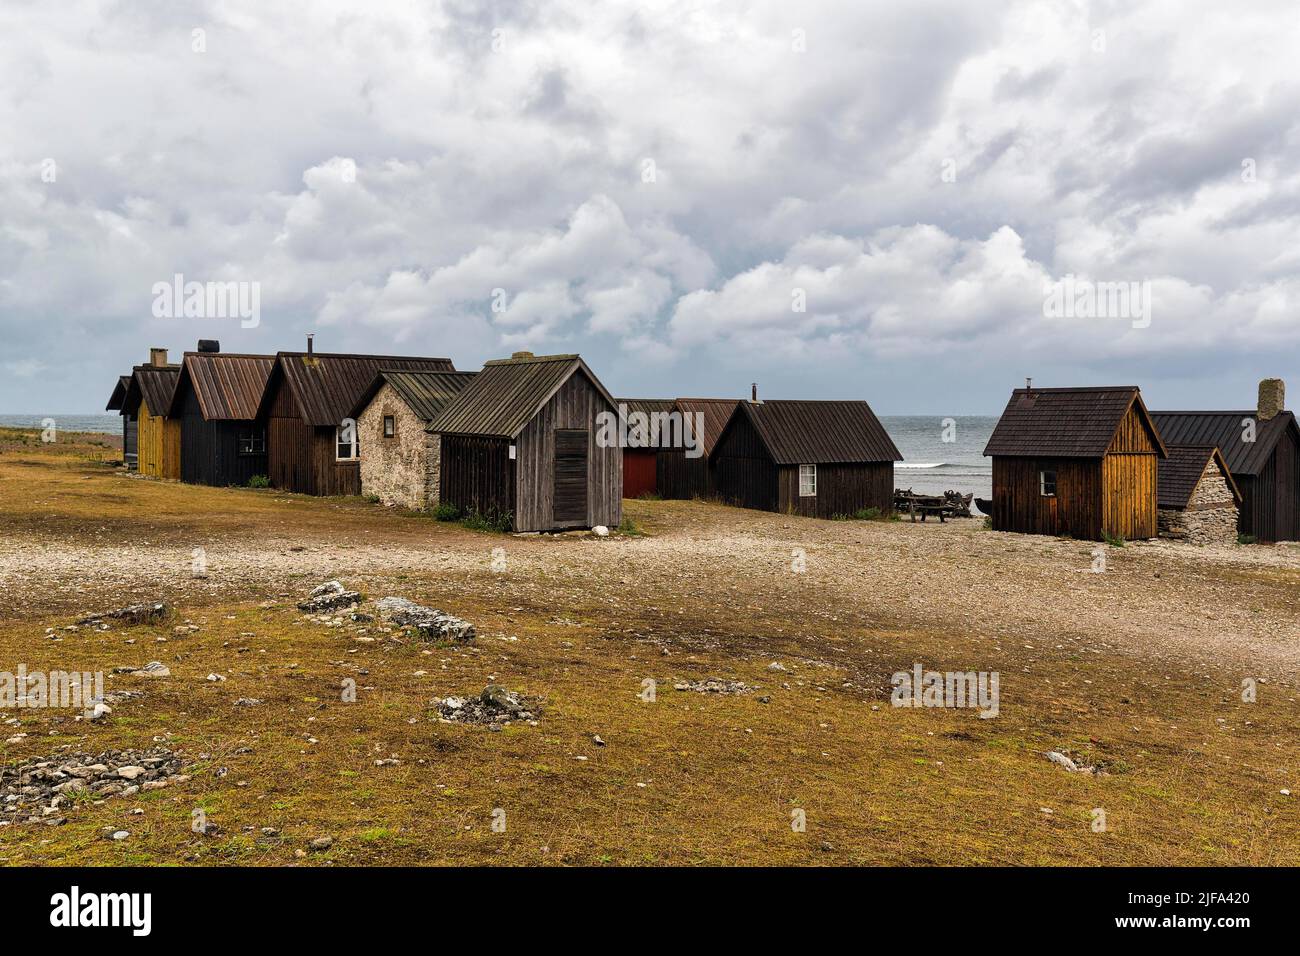 Vecchie capanne da pesca, luogo di pesca tradizionale, villaggio di pescatori, Helgumannen Fiskelaege, isola di Faroe, Faroe, Gotland, Mar Baltico, Svezia Foto Stock